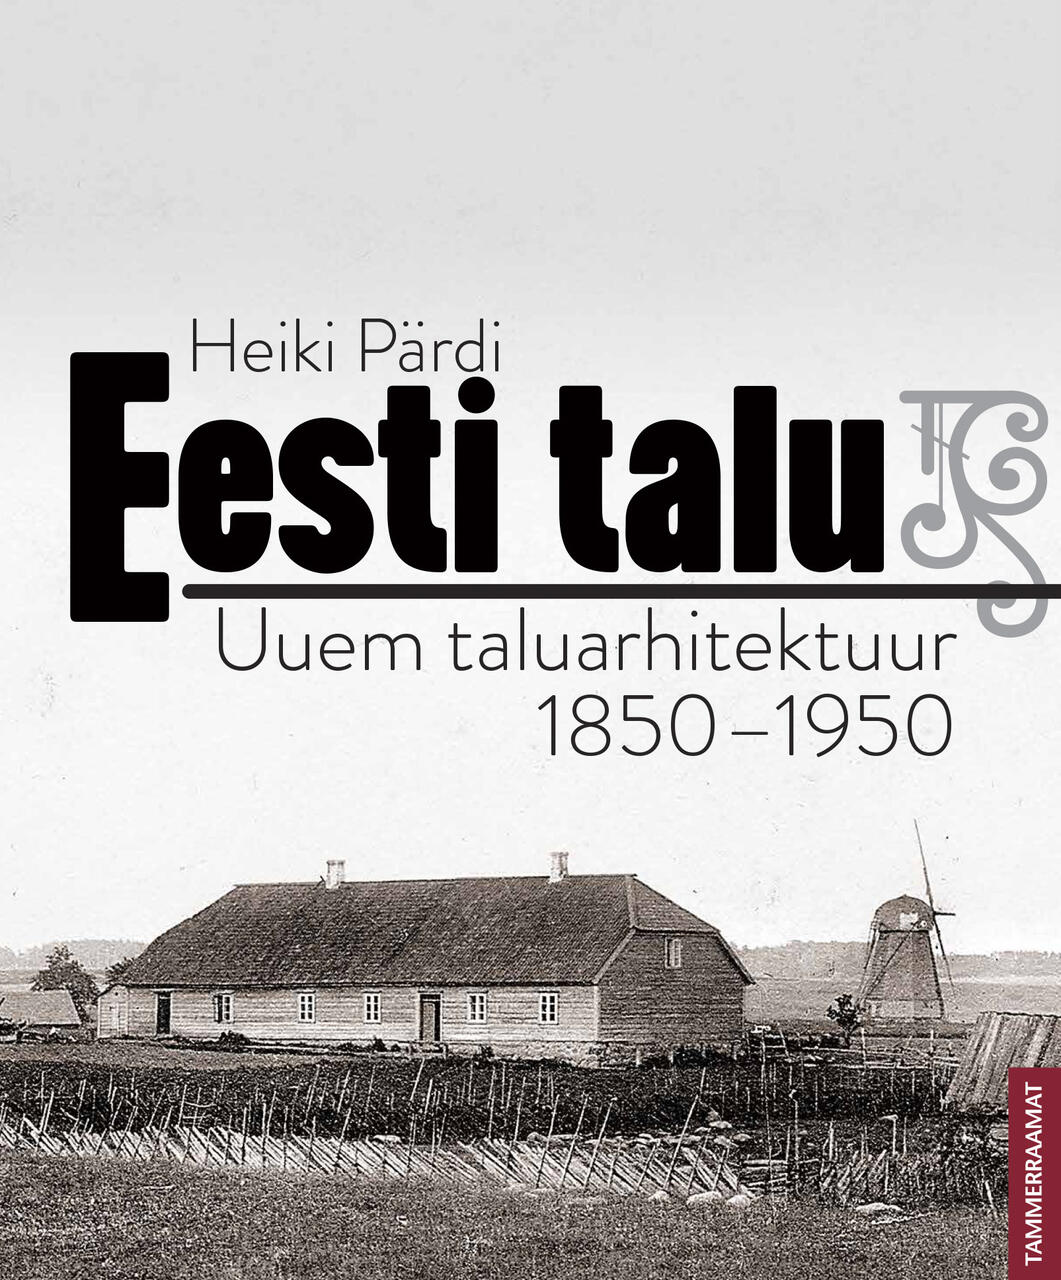 Eesti talu. Uuem taluarhitektuur 1850-1950